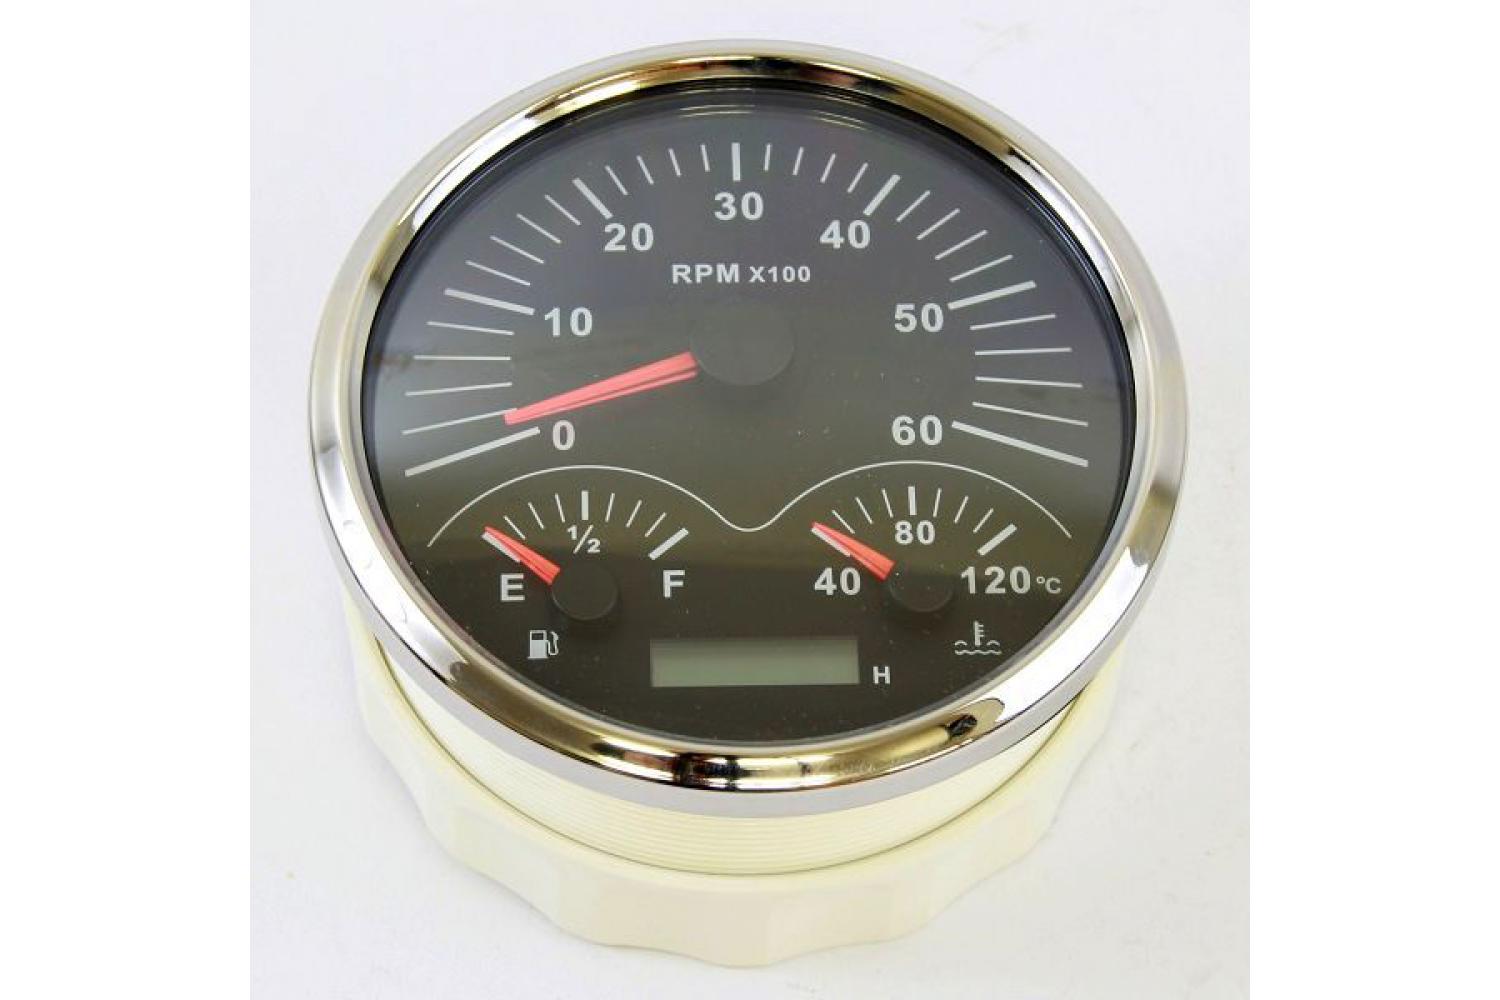 KUS GPS Geschwindigkeitsmesser Speedometer 30kn 55km/h mit